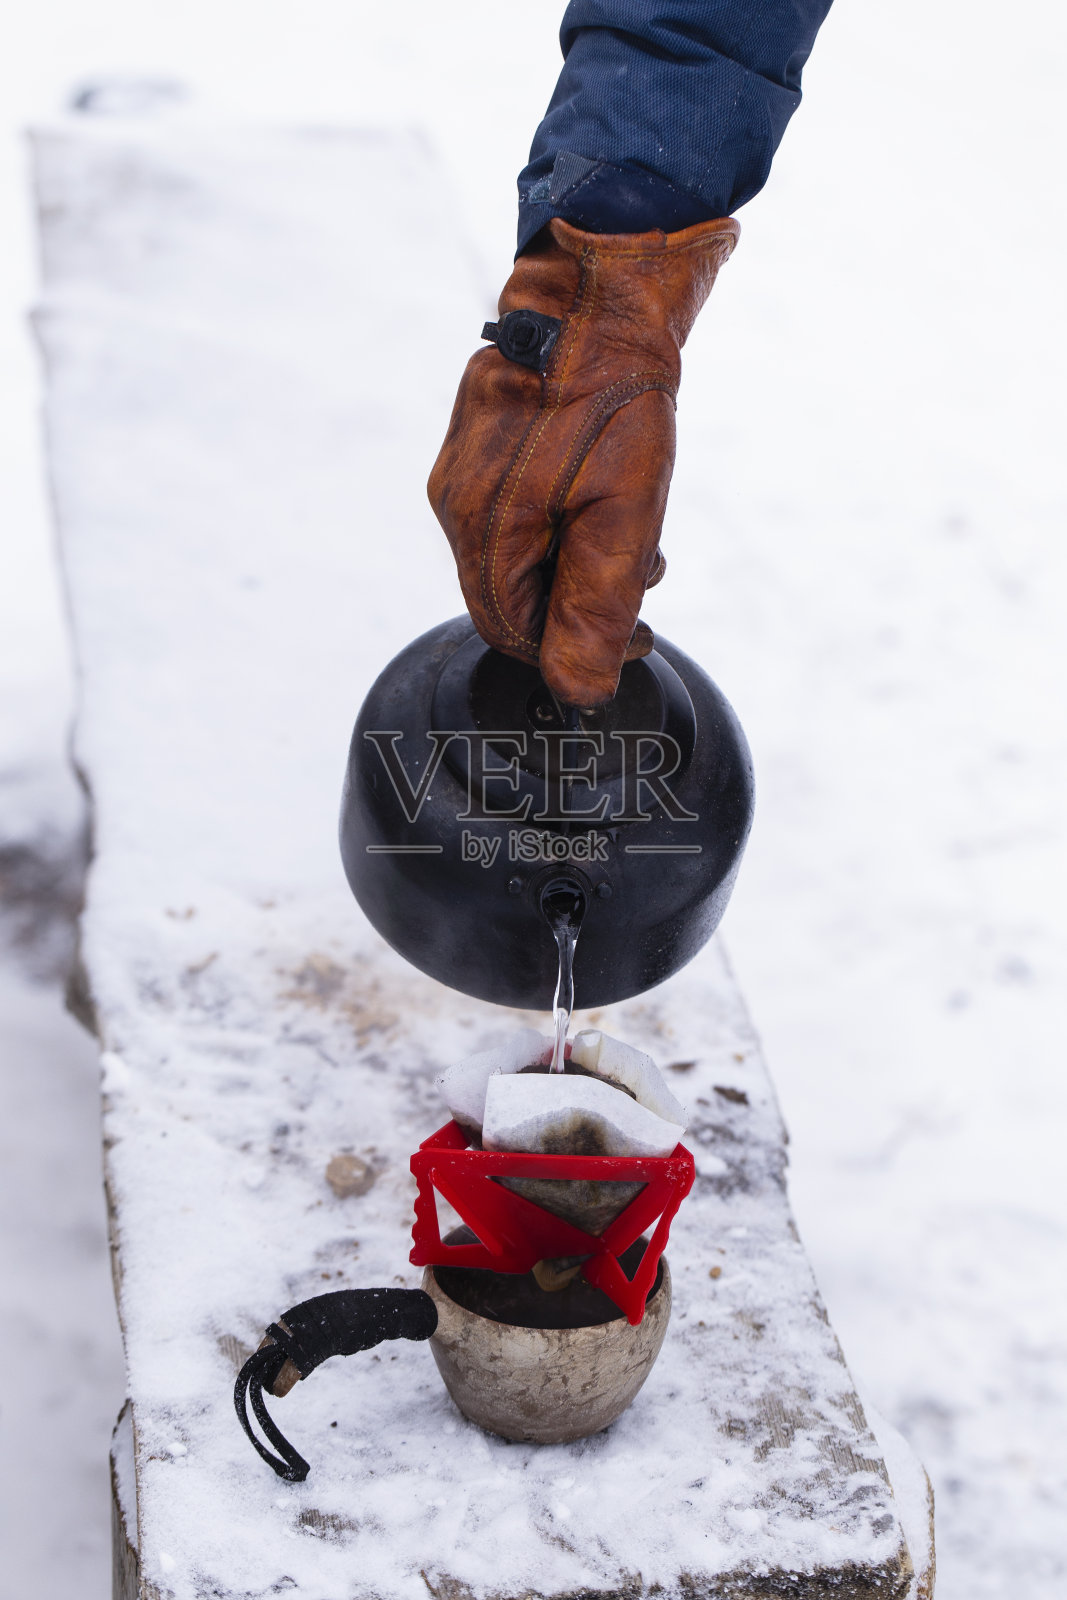 下雪天的热水咖啡照片摄影图片